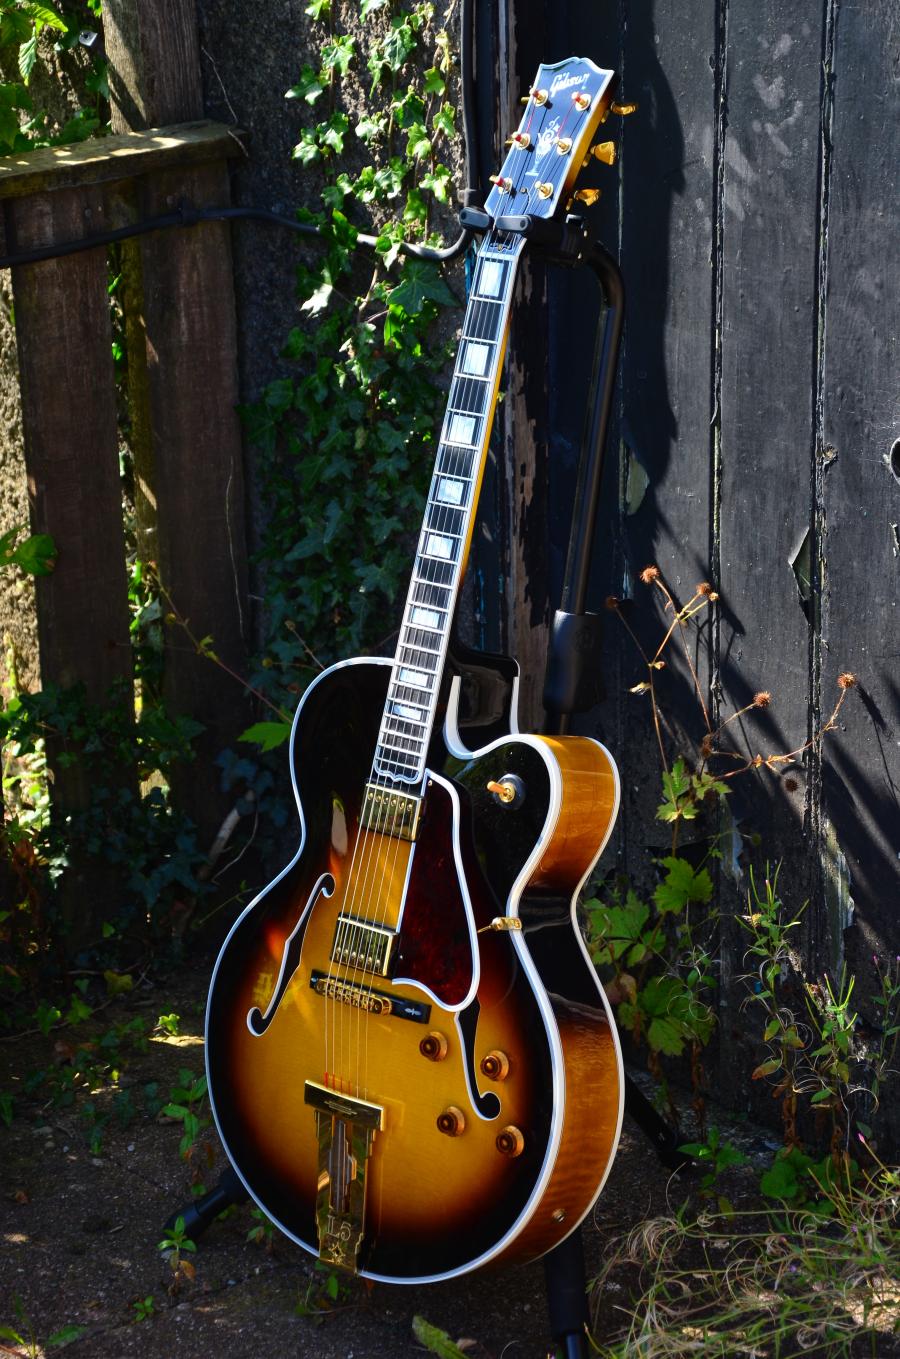 The Venerable Gibson L-5-dsc_7816-jpg